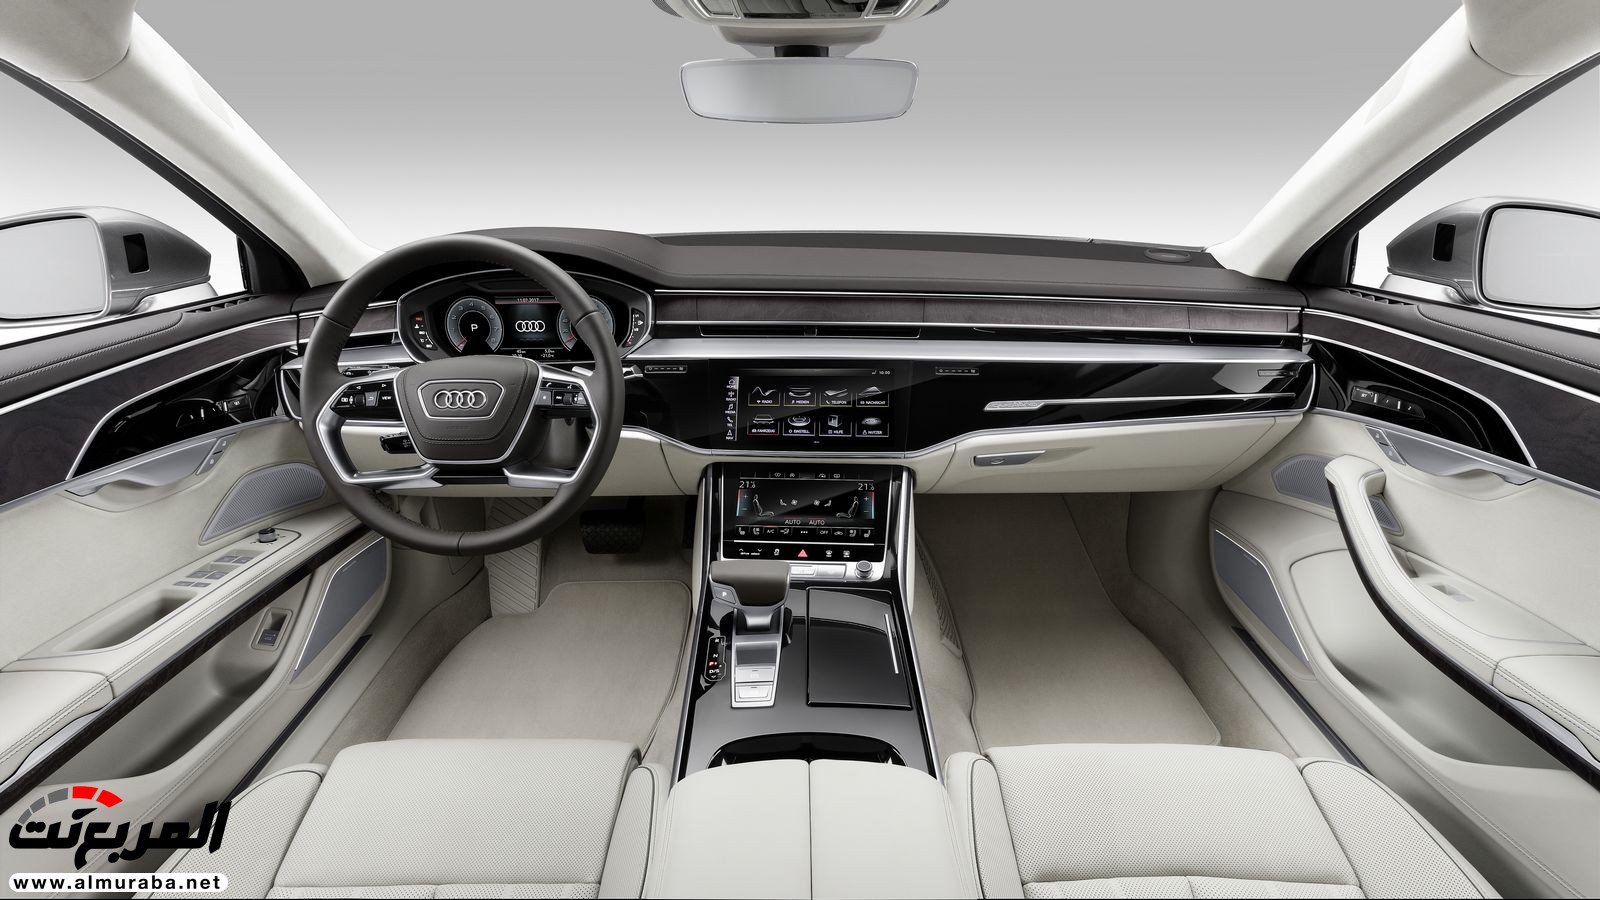 أودي A8 2018 الجديدة كلياً تكشف نفسها بتصميم وتقنيات متطورة "معلومات + 100 صورة" Audi A8 31